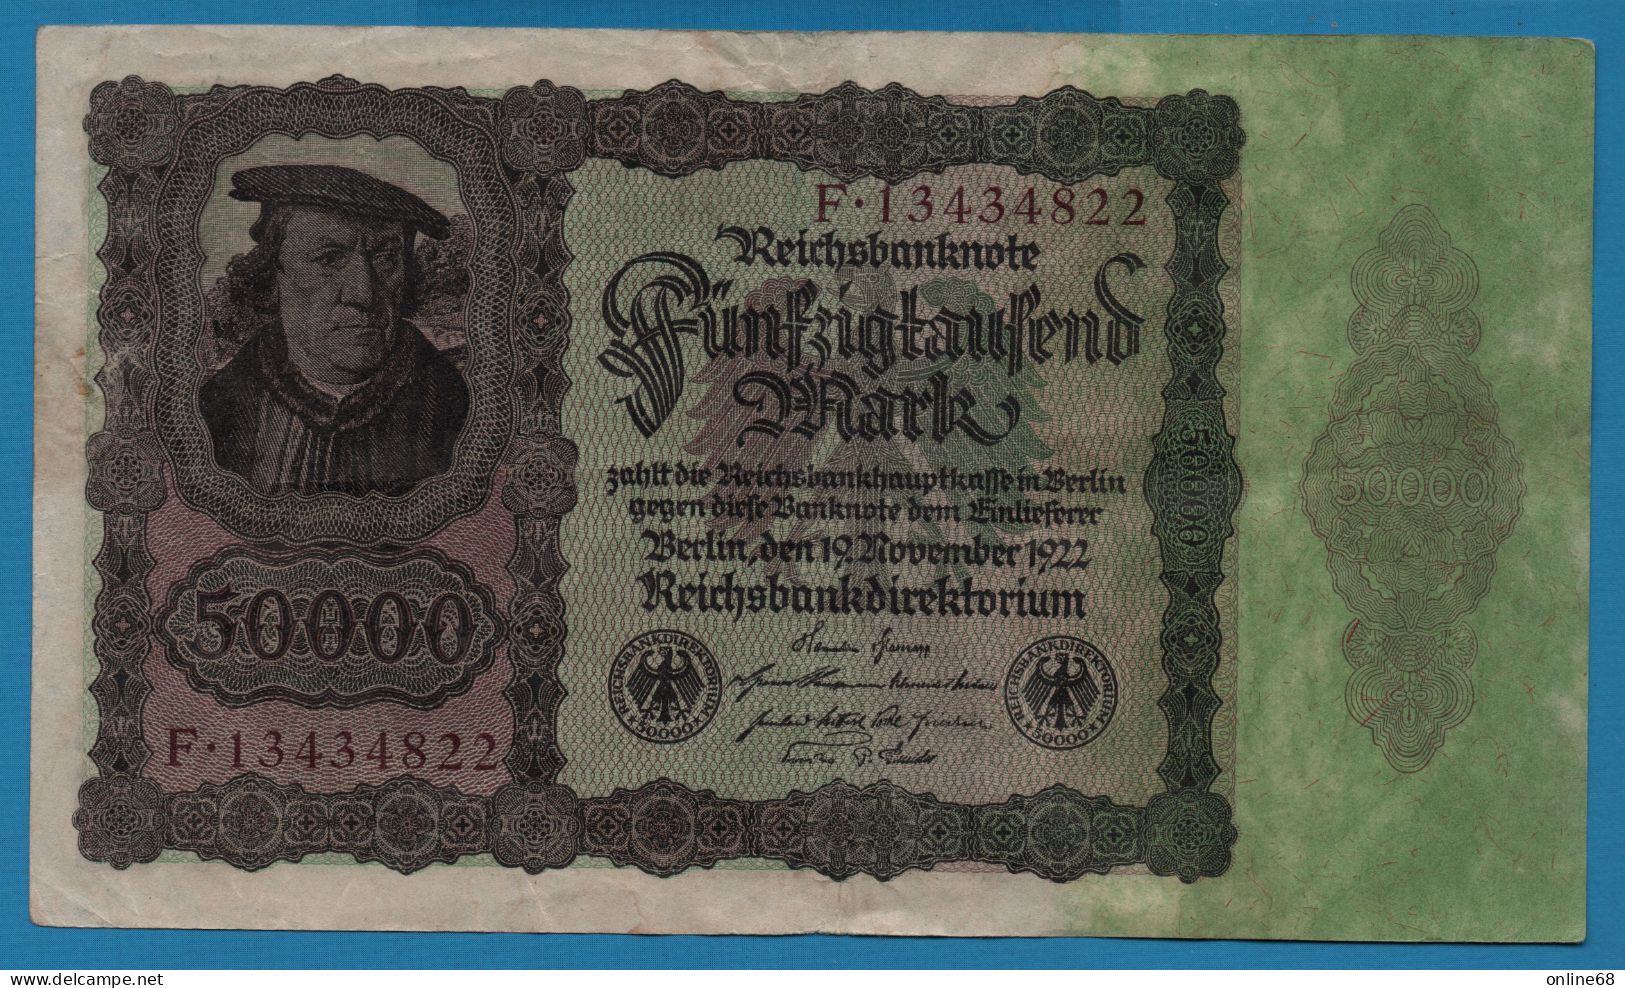 DEUTSCHES REICH 50.000 MARK 19.11.1922 # F.13434822 P# 80 Bürgermeister Brauweiler - 50.000 Mark